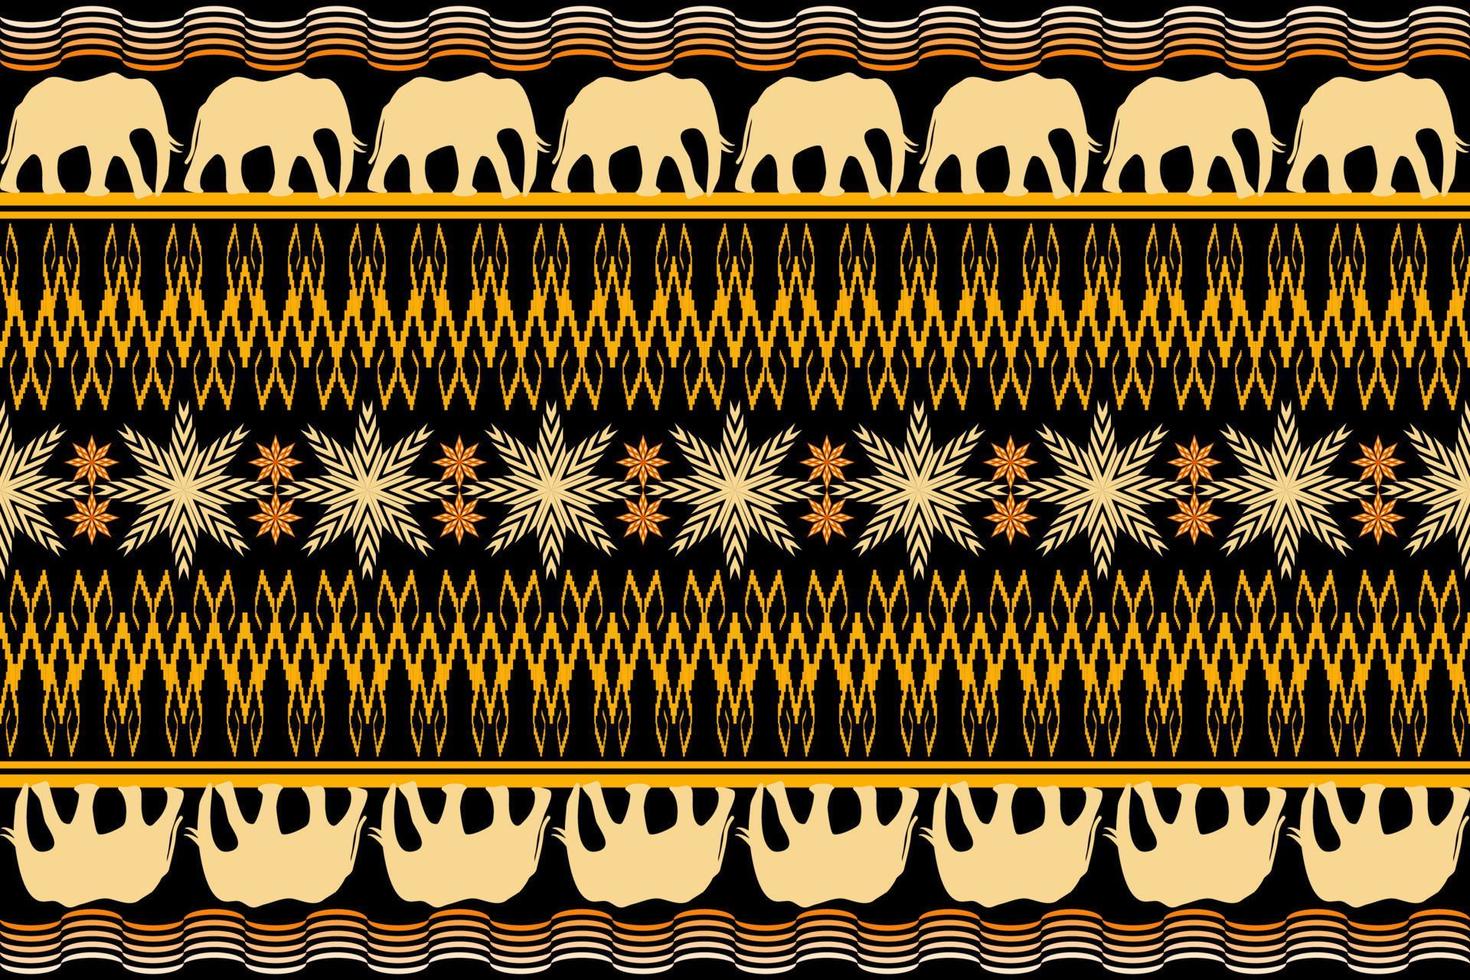 meetkundig etnisch oosters traditioneel kunst patroon.figuur tribal borduurwerk stijl.design voor etnisch achtergrond,behang,kleding,inwikkeling,stof,vector illustratie vector